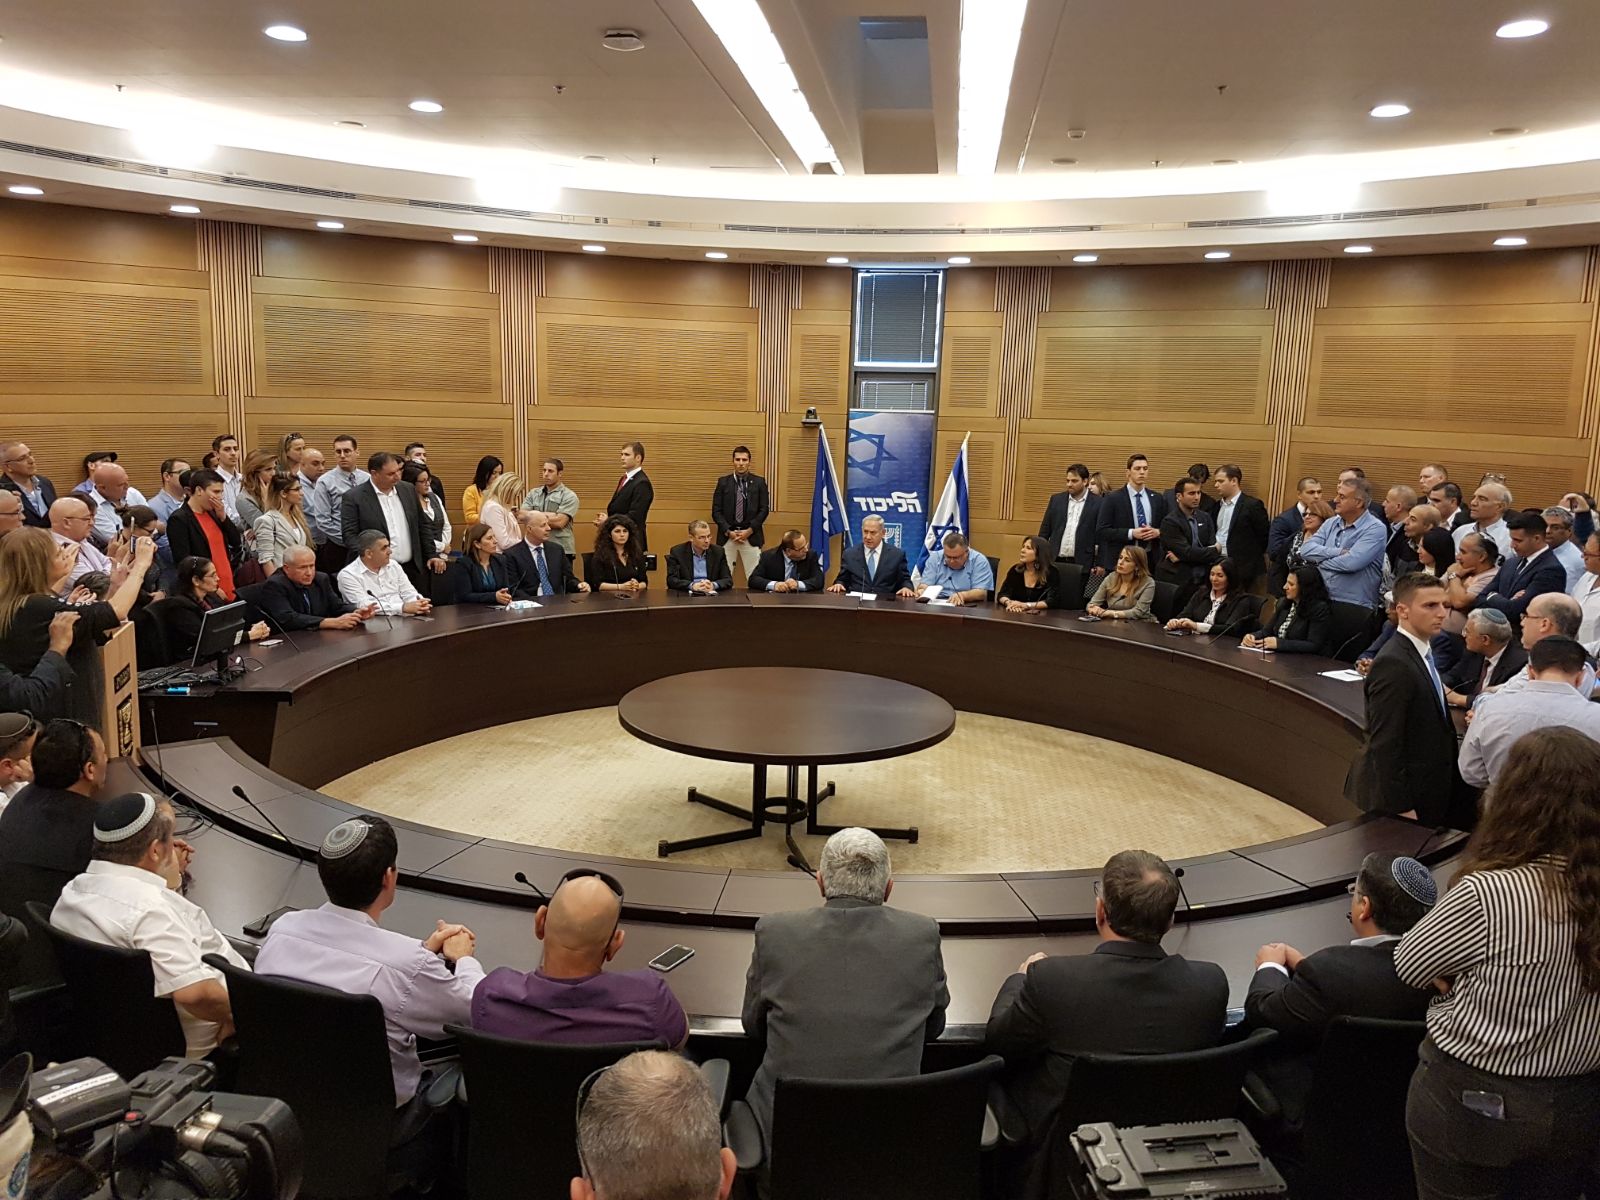 Заявление главы правительства и председателя партии «Ликуд» Биньямина Нетаниягу на заседании фракции 20.11.17